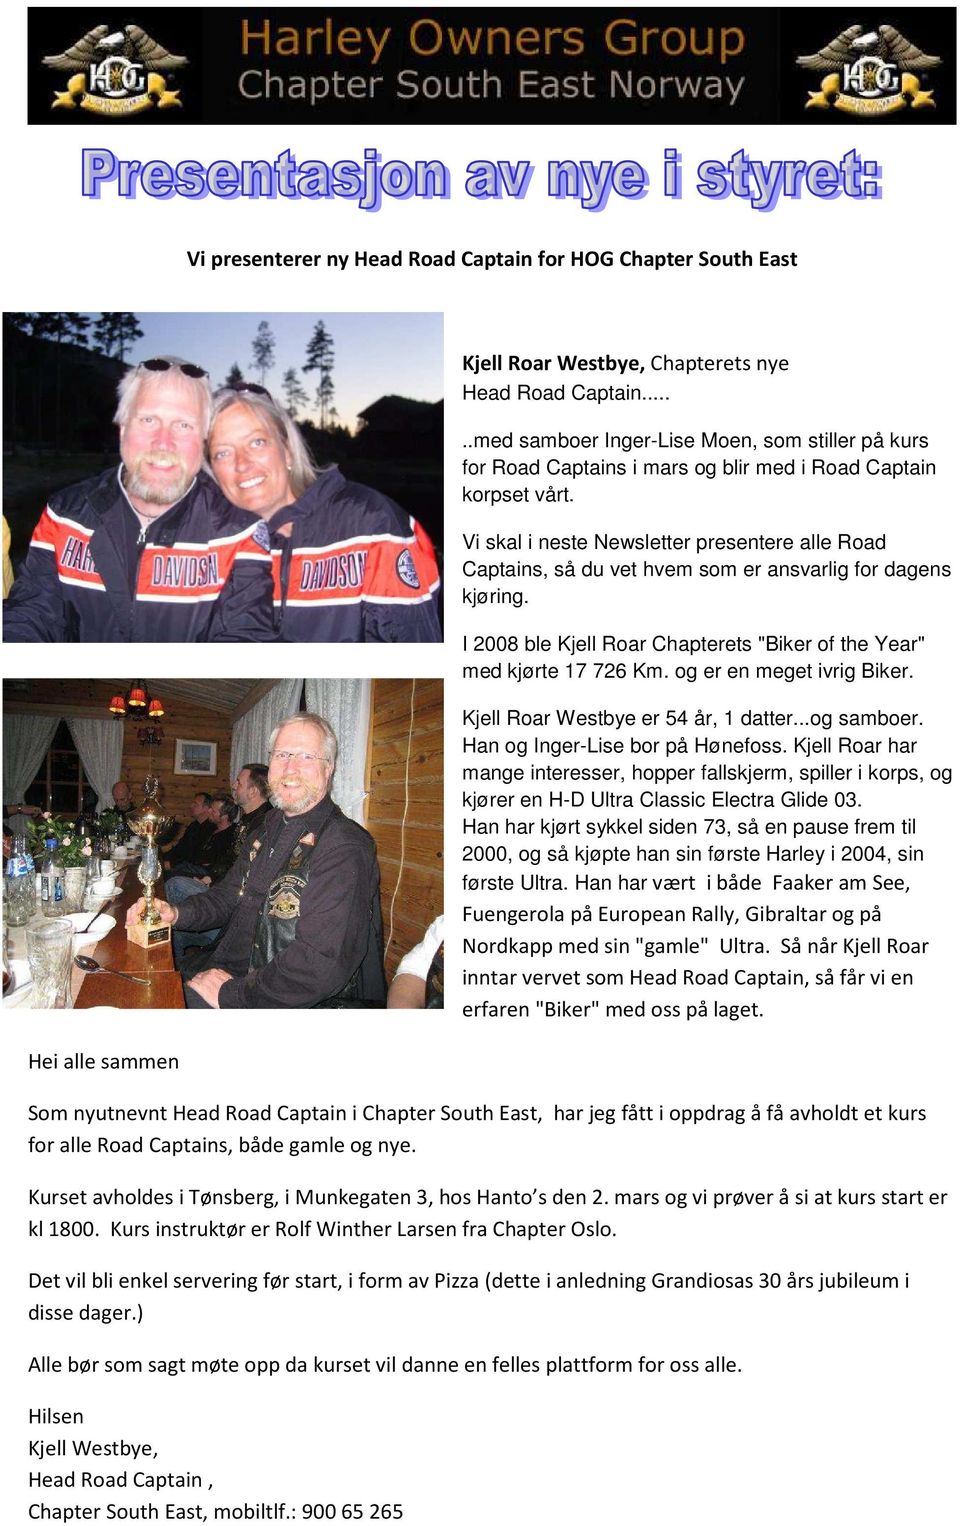 Vi skal i neste Newsletter presentere alle Road Captains, så du vet hvem som er ansvarlig for dagens kjøring. I 2008 ble Kjell Roar Chapterets "Biker of the Year" med kjørte 17 726 Km.